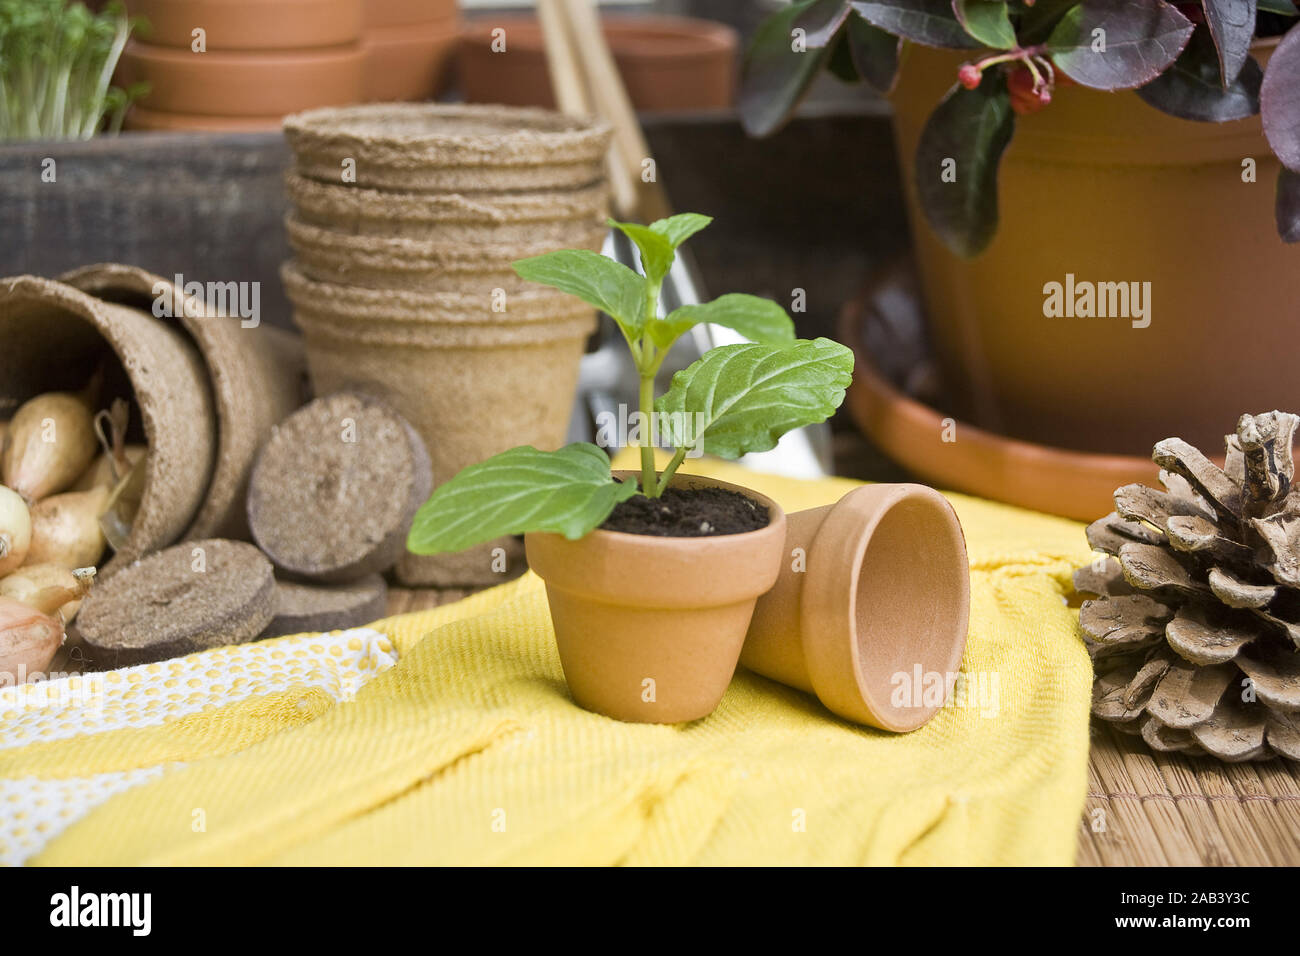 Dans un Setzling Blumentopf mit Handschuhe |plantule dans un pot avec des gants| Banque D'Images